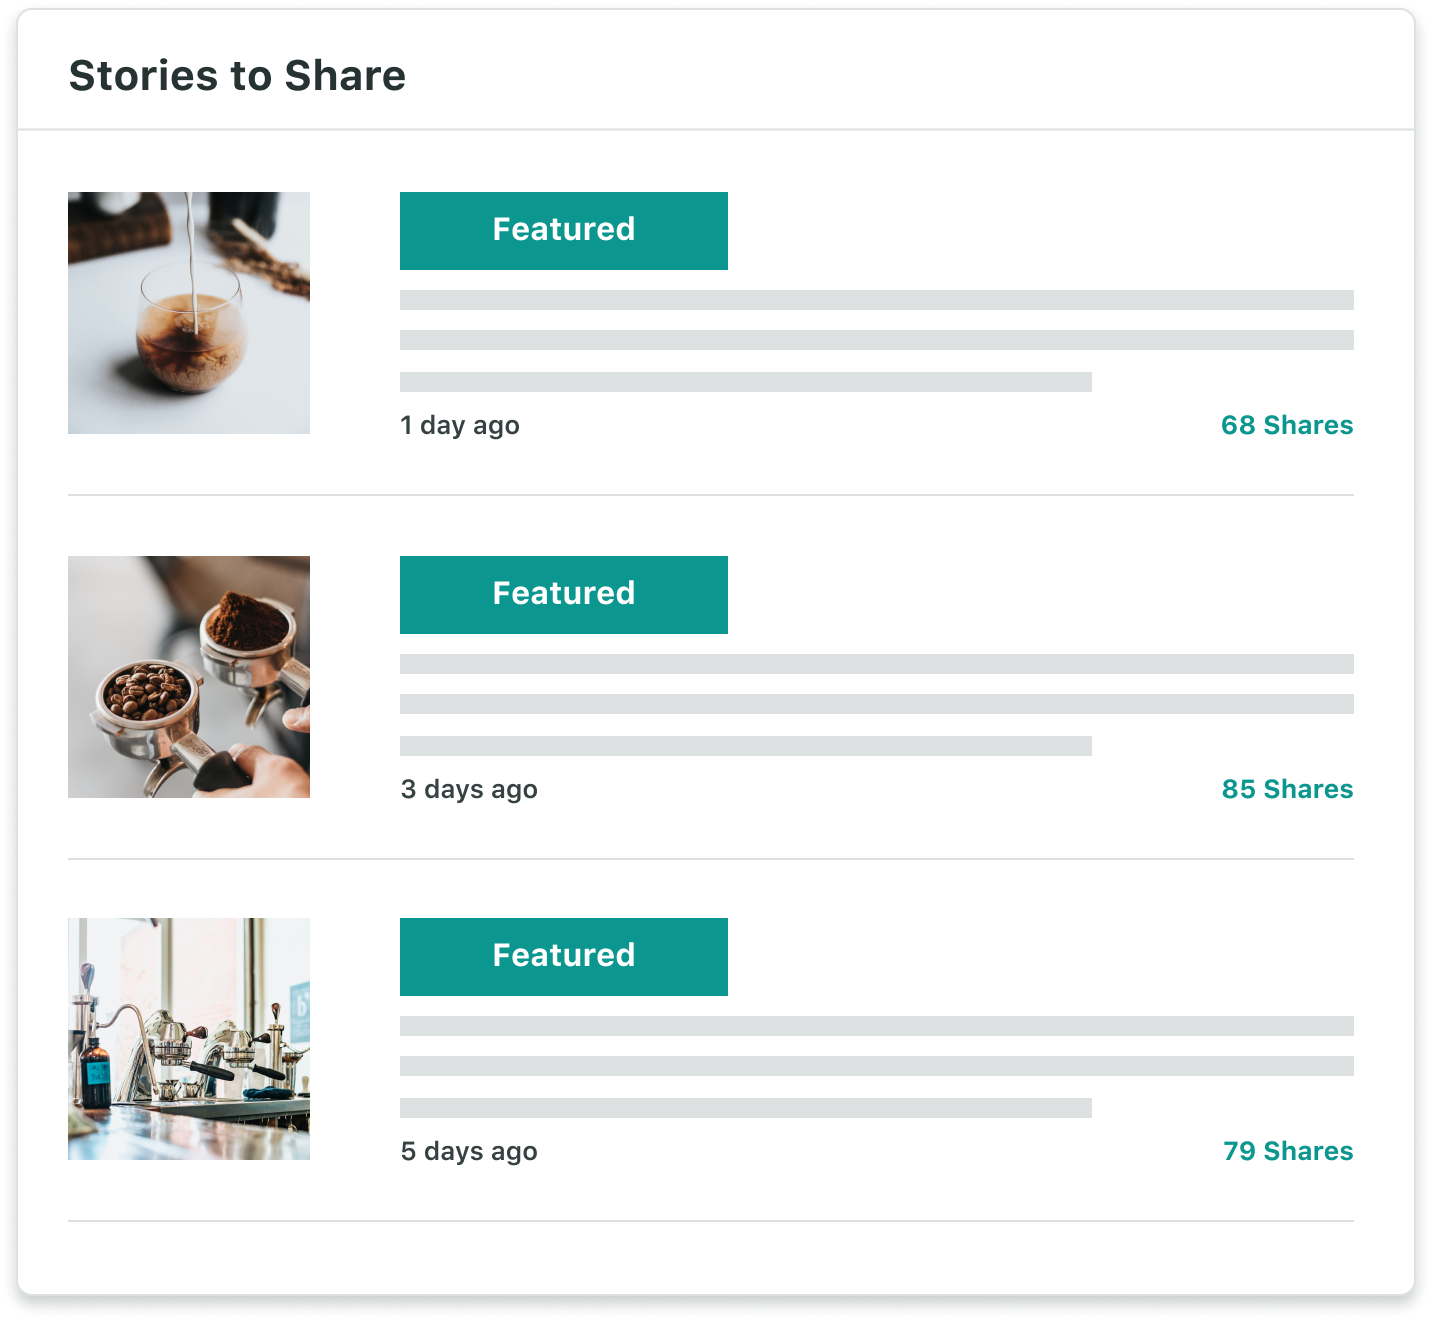 La herramienta de promoción de empleados permite a los empleados sugerir contenido para compartir